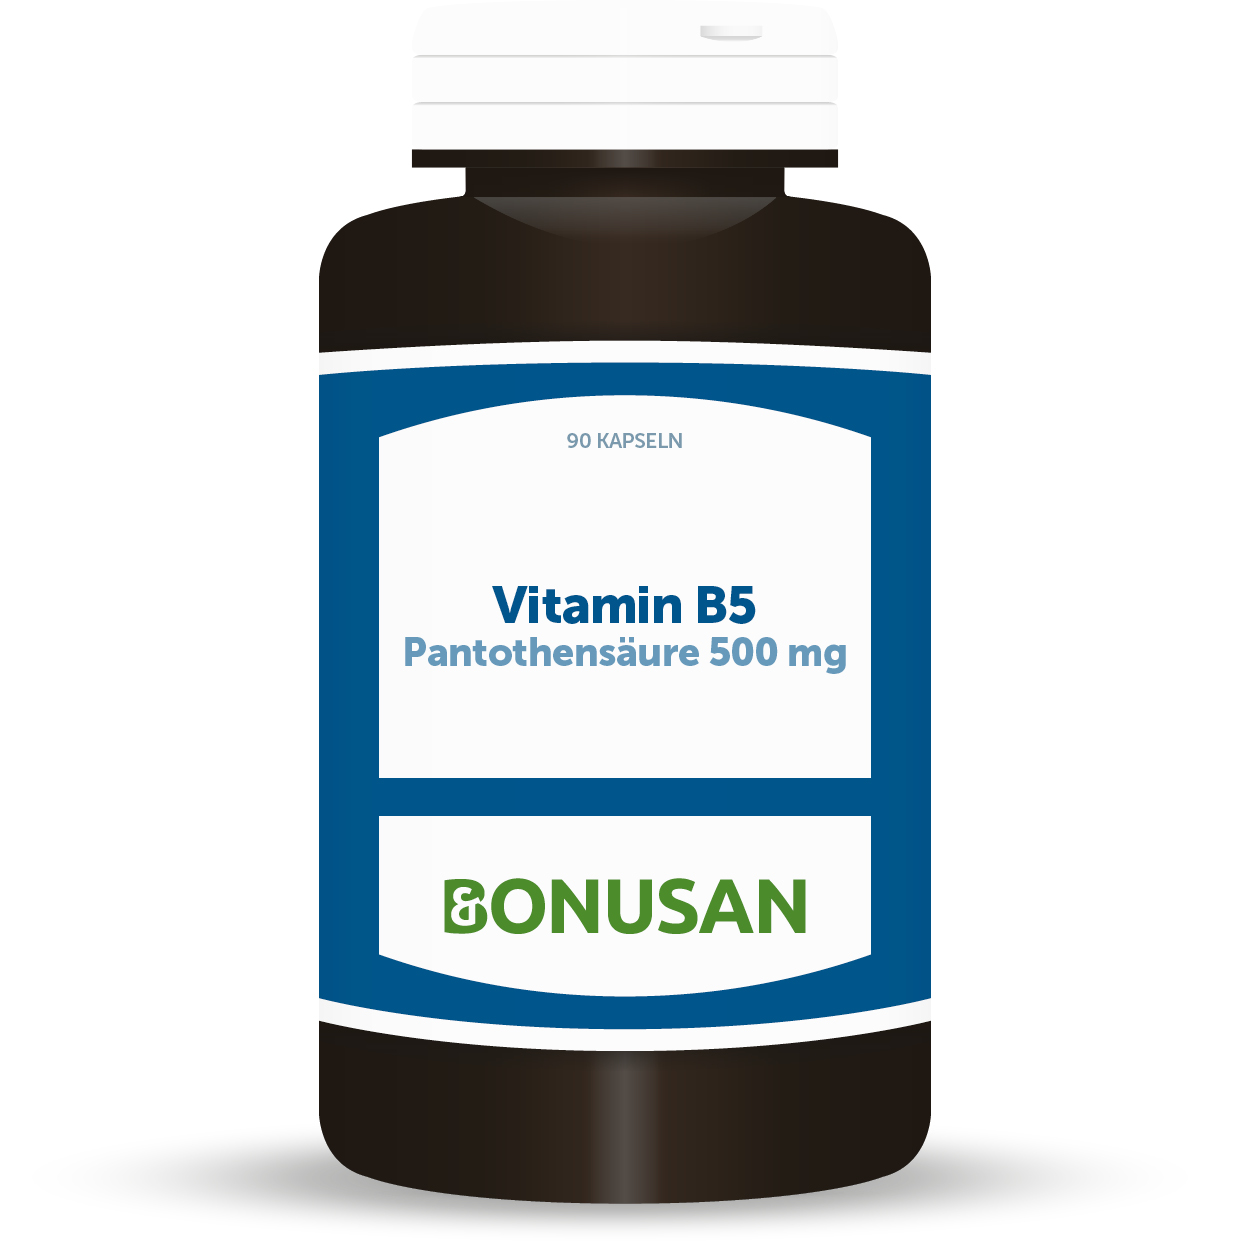 Vitamin B5 Pantothensäure 500 mg